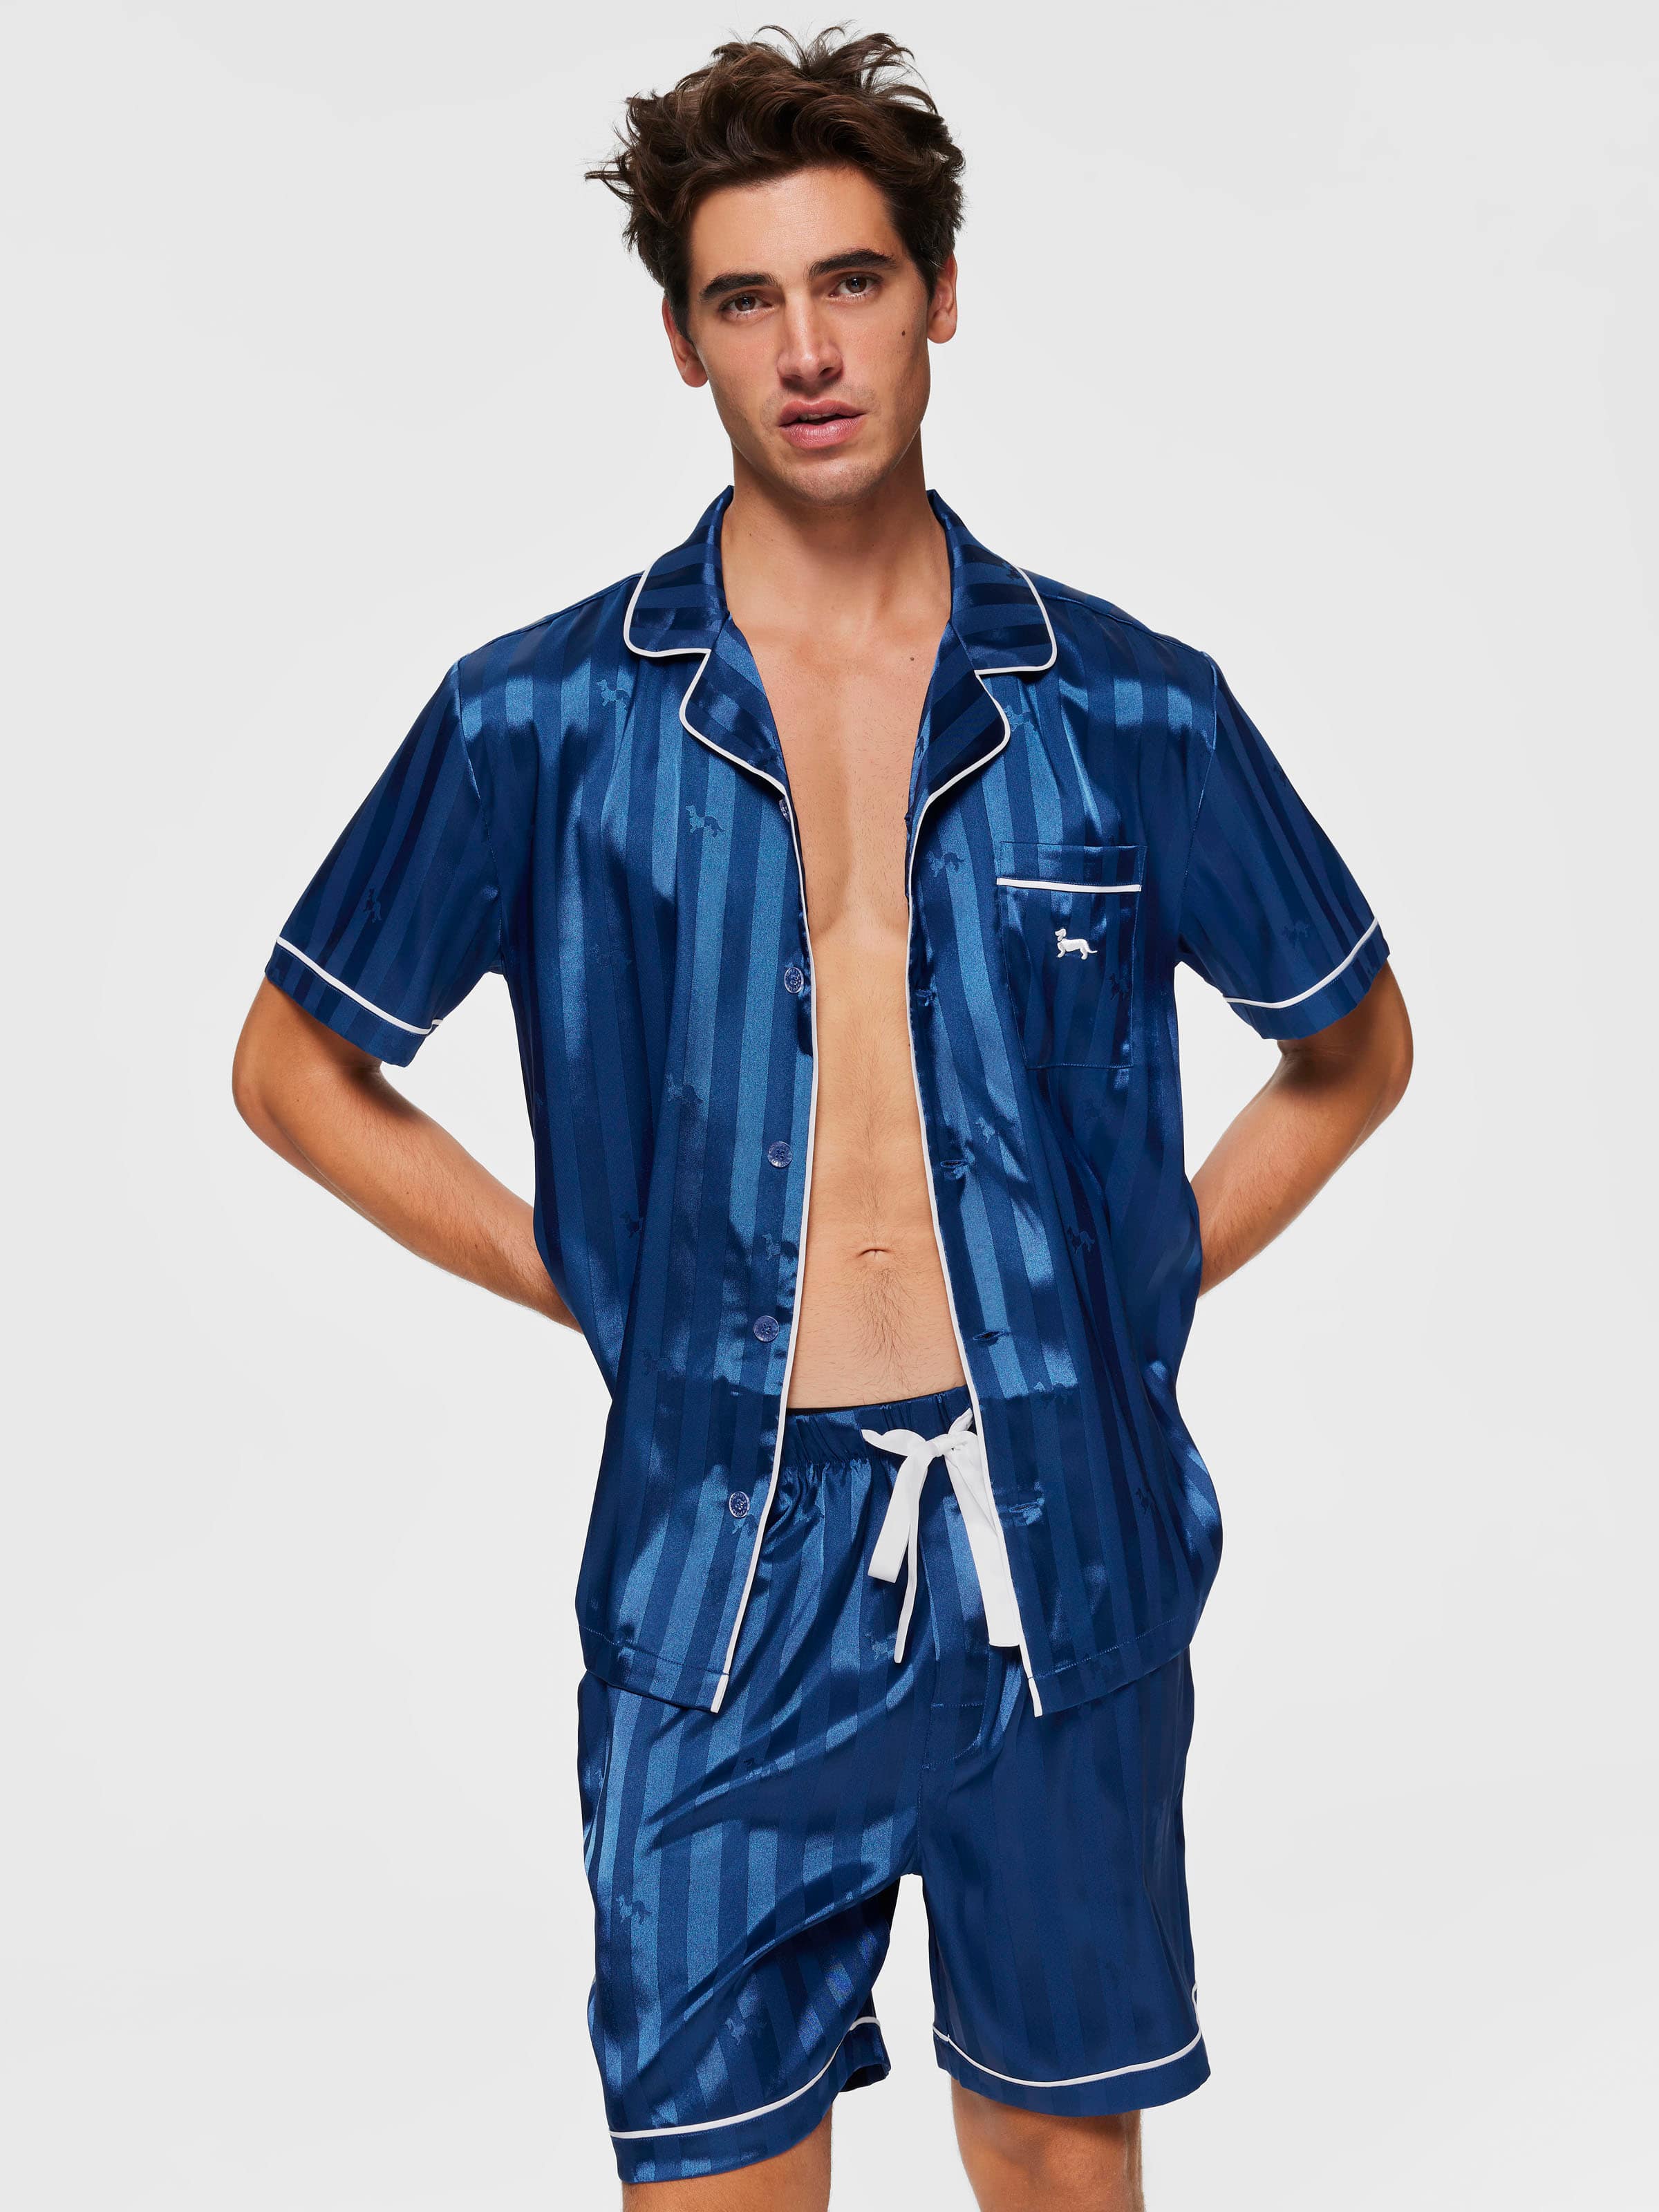 Men's Pyjama Sets - PJ Sets For Men